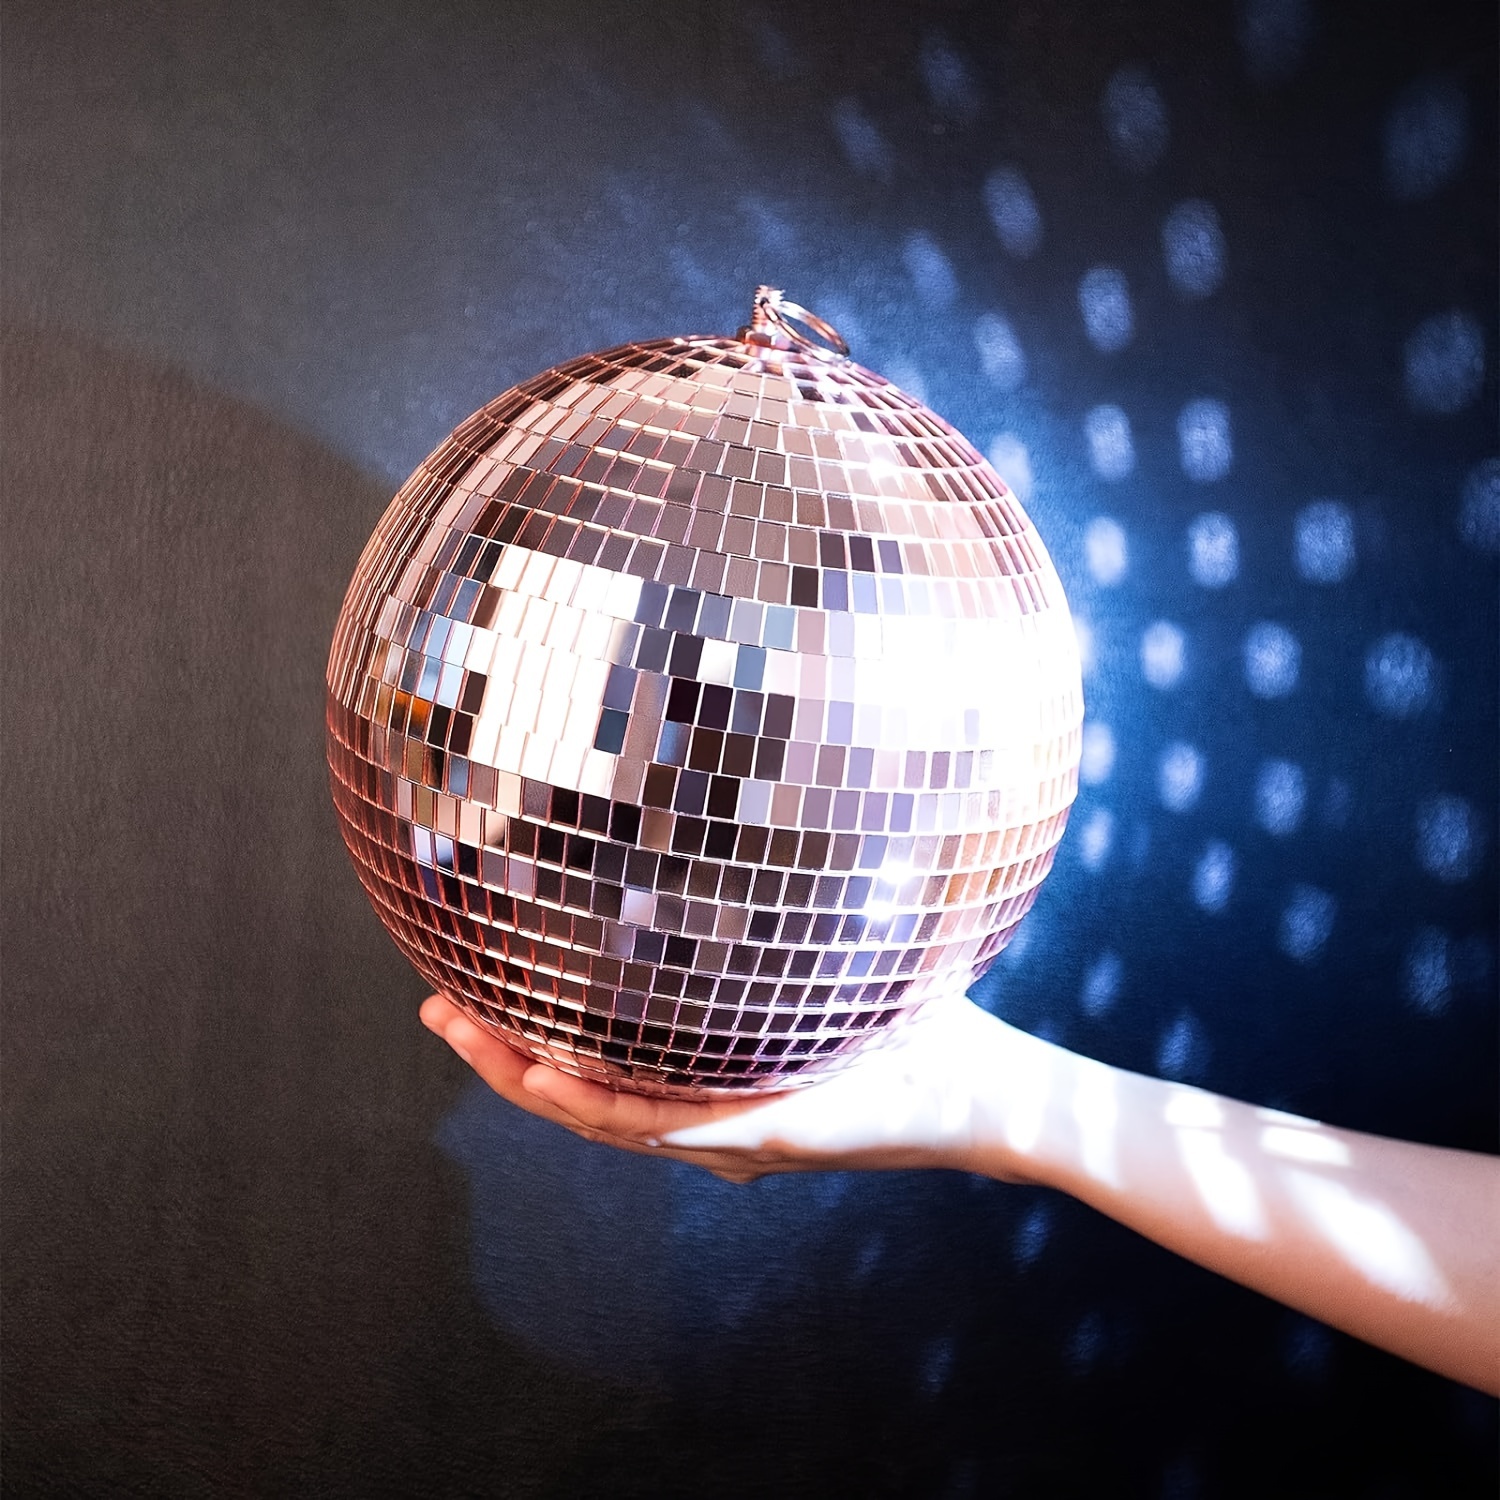 3 raisons de s'acheter une boule disco décorative, LA tendance de l'heure